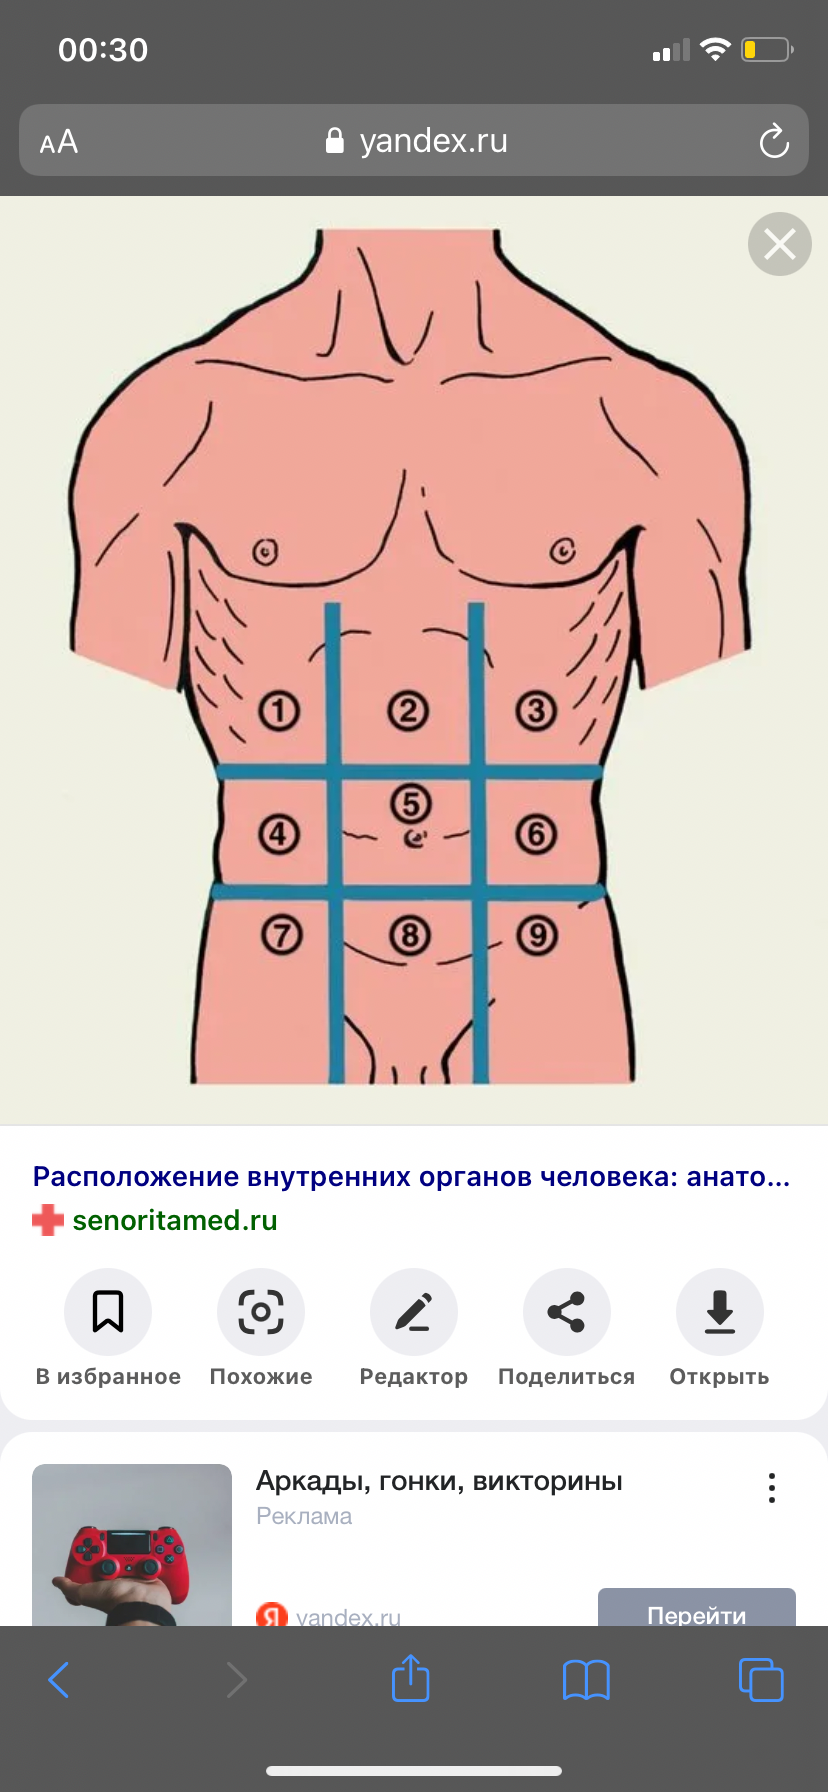 Подложечная область живота. Эпигастральная область желудка. Подложечная область желудка. Эпигастральная область желудка где находится фото. Подложечная область желудка это где находится.